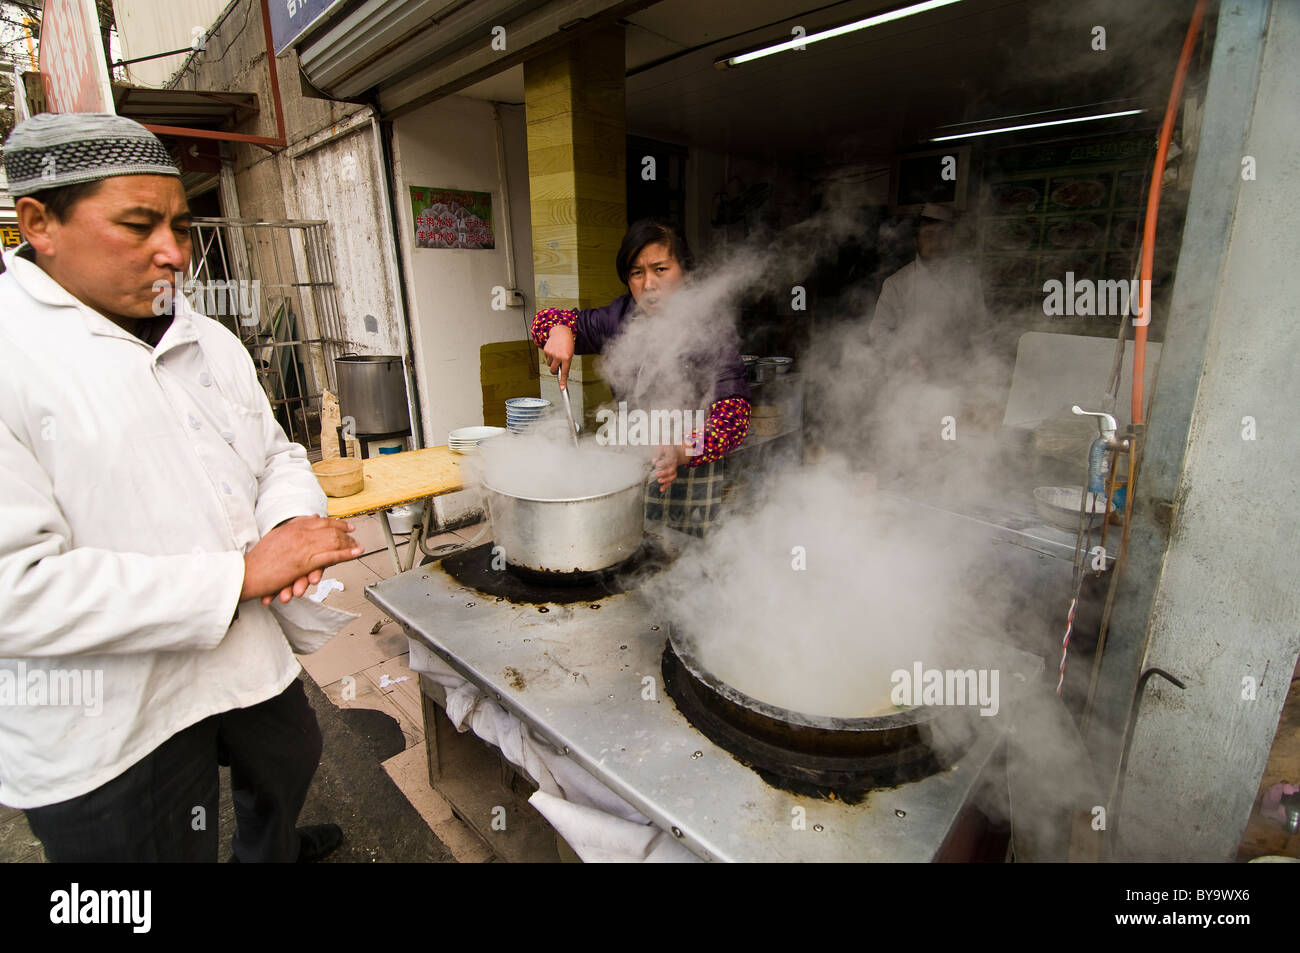 Muslim street restaurant in China. Stock Photo